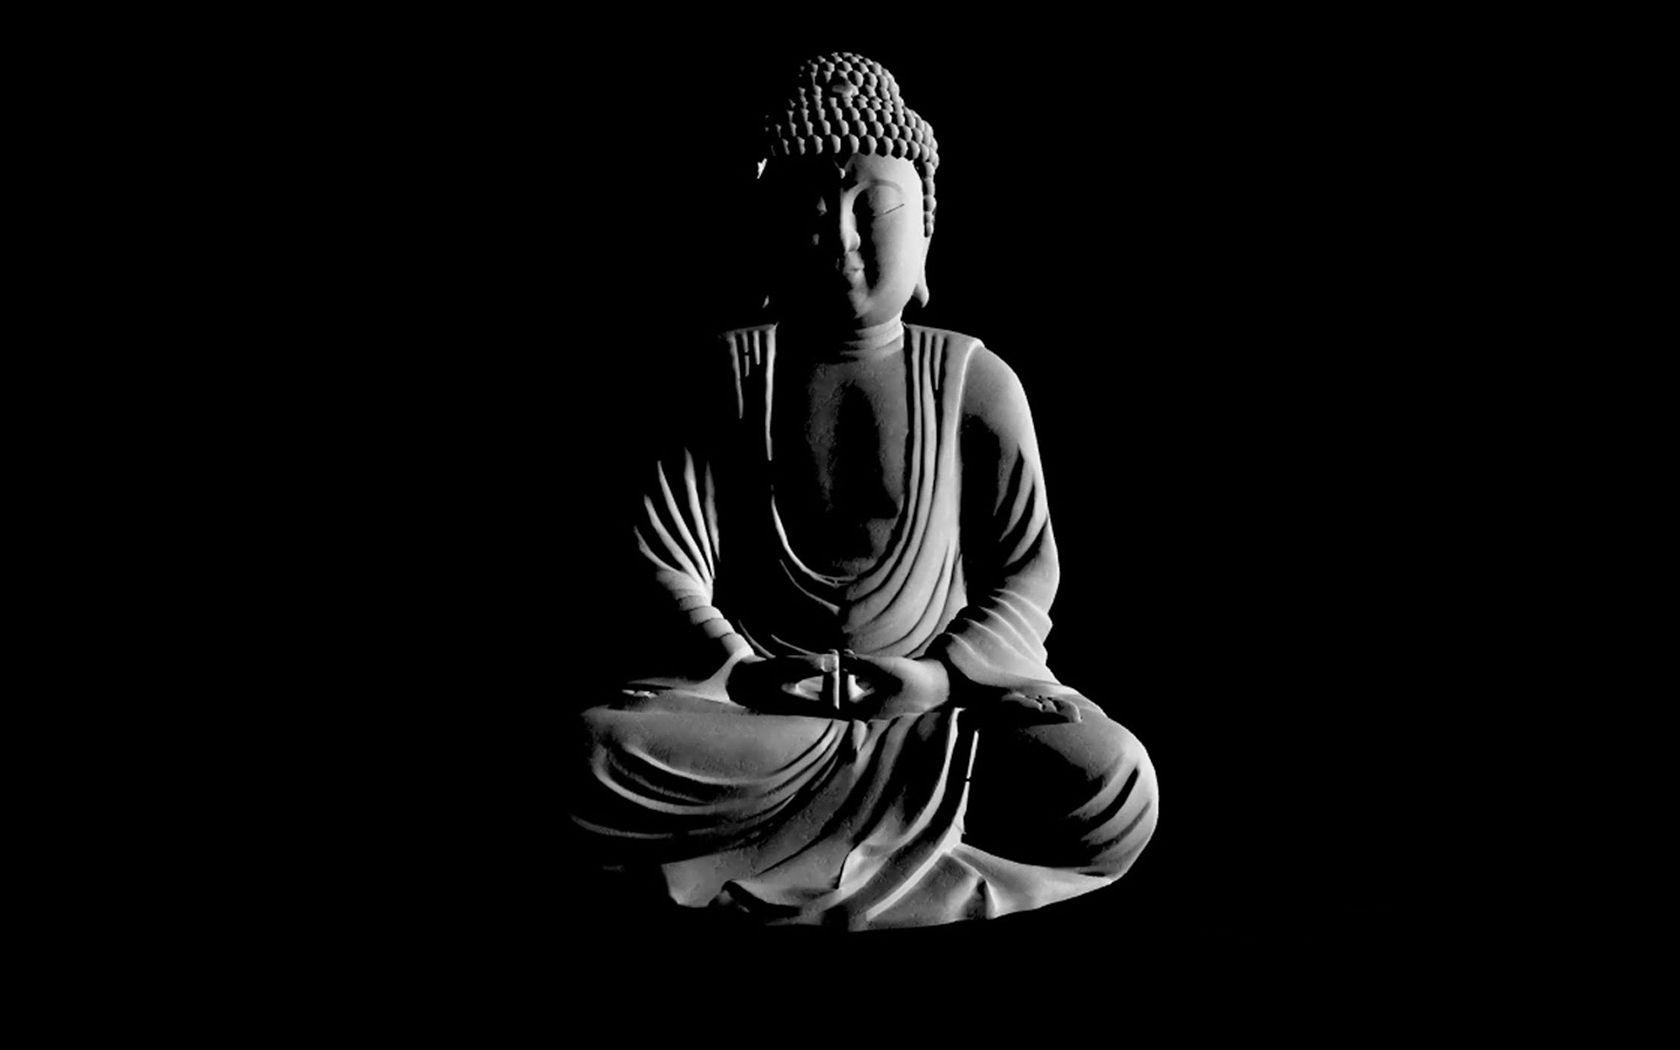 Bức ảnh đẹp với nền đen tuyệt đẹp, hiển thị hình ảnh của Chúa Phật với sự thanh tịnh và sự thanh nhã của màu đen. Hãy thưởng thức bức ảnh này để cảm nhận sự yên bình và bình an trong tâm hồn của bạn.